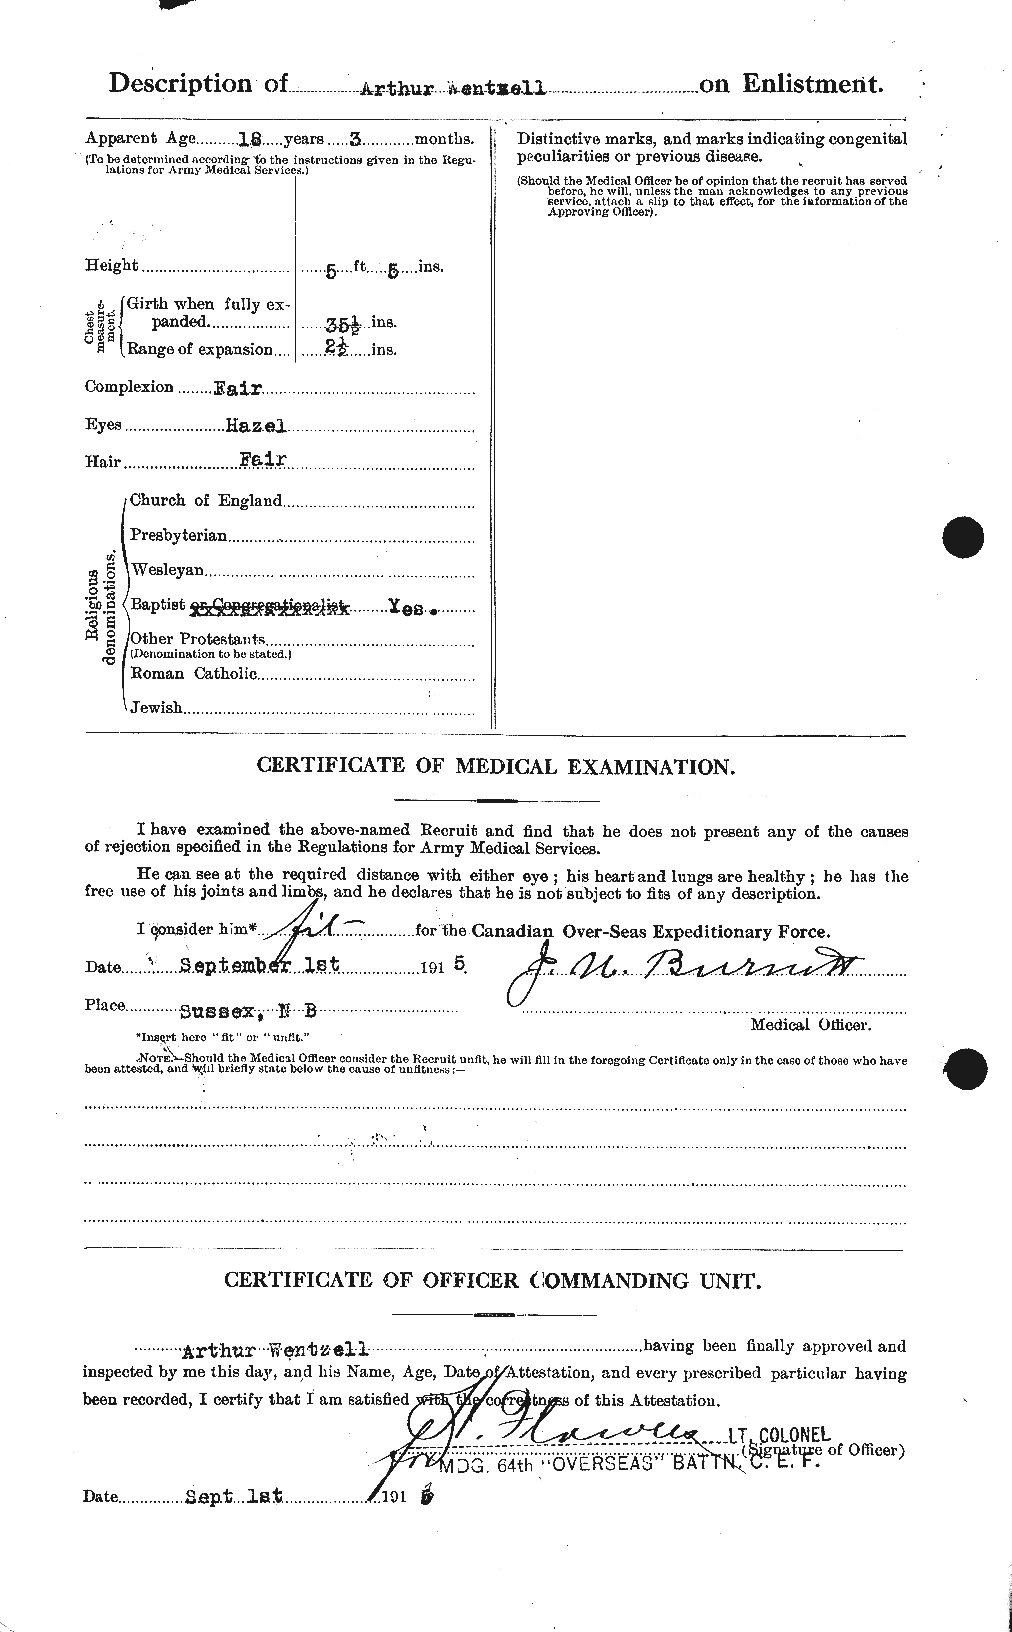 Dossiers du Personnel de la Première Guerre mondiale - CEC 664642b